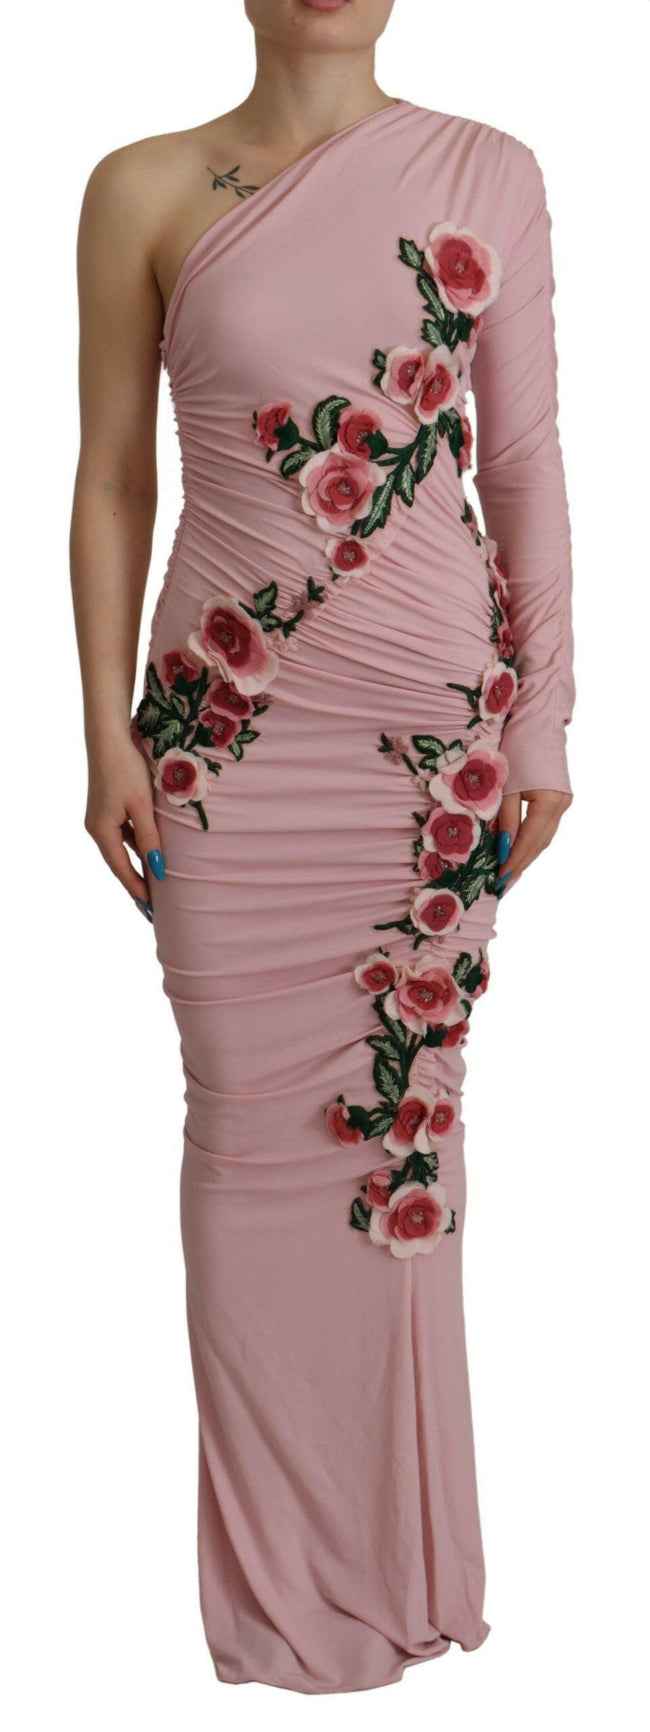 Dolce & Gabbana Pink Flower Embellished One Shoulder Dress - GENUINE AUTHENTIC BRAND LLC  